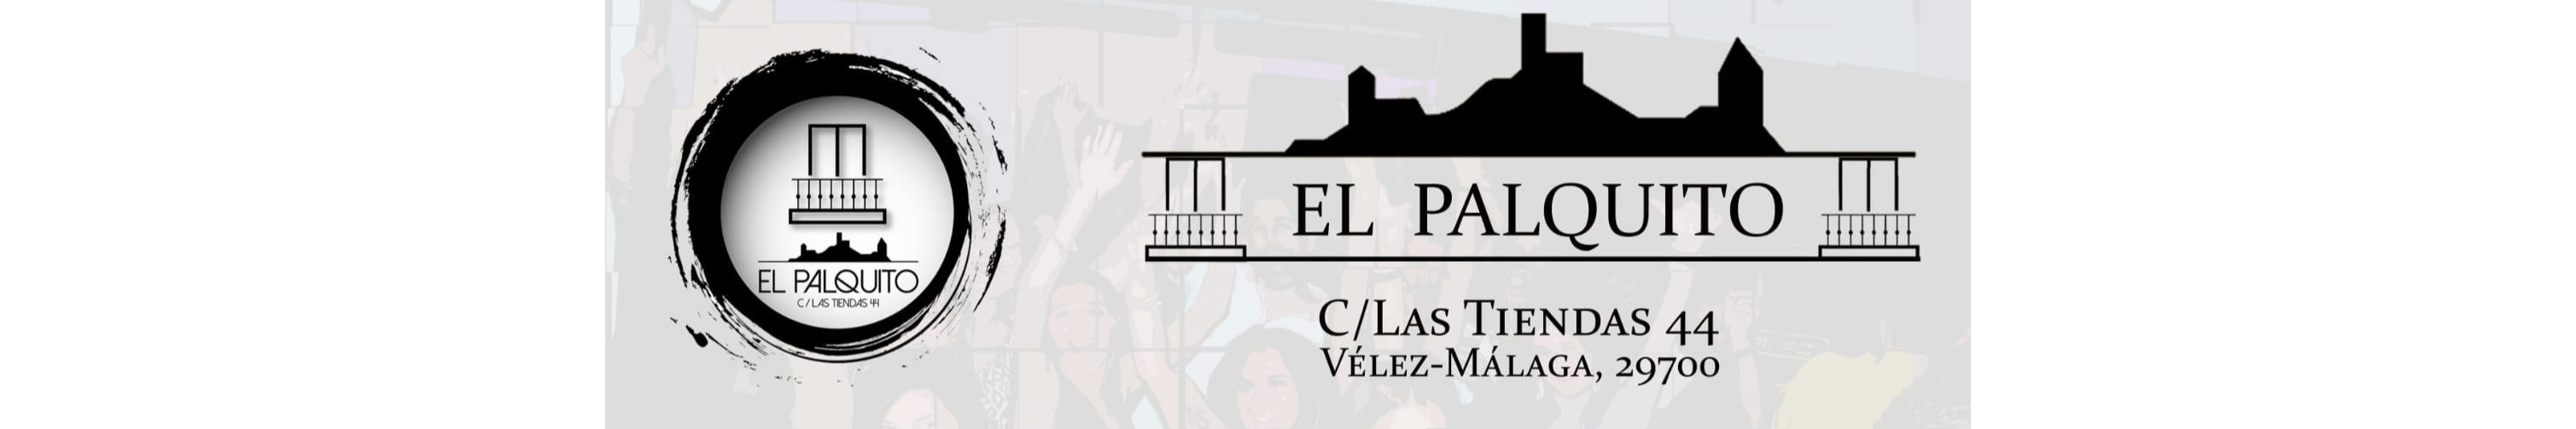 El lugar de referencia para celebrar eventos en Vélez-Málaga